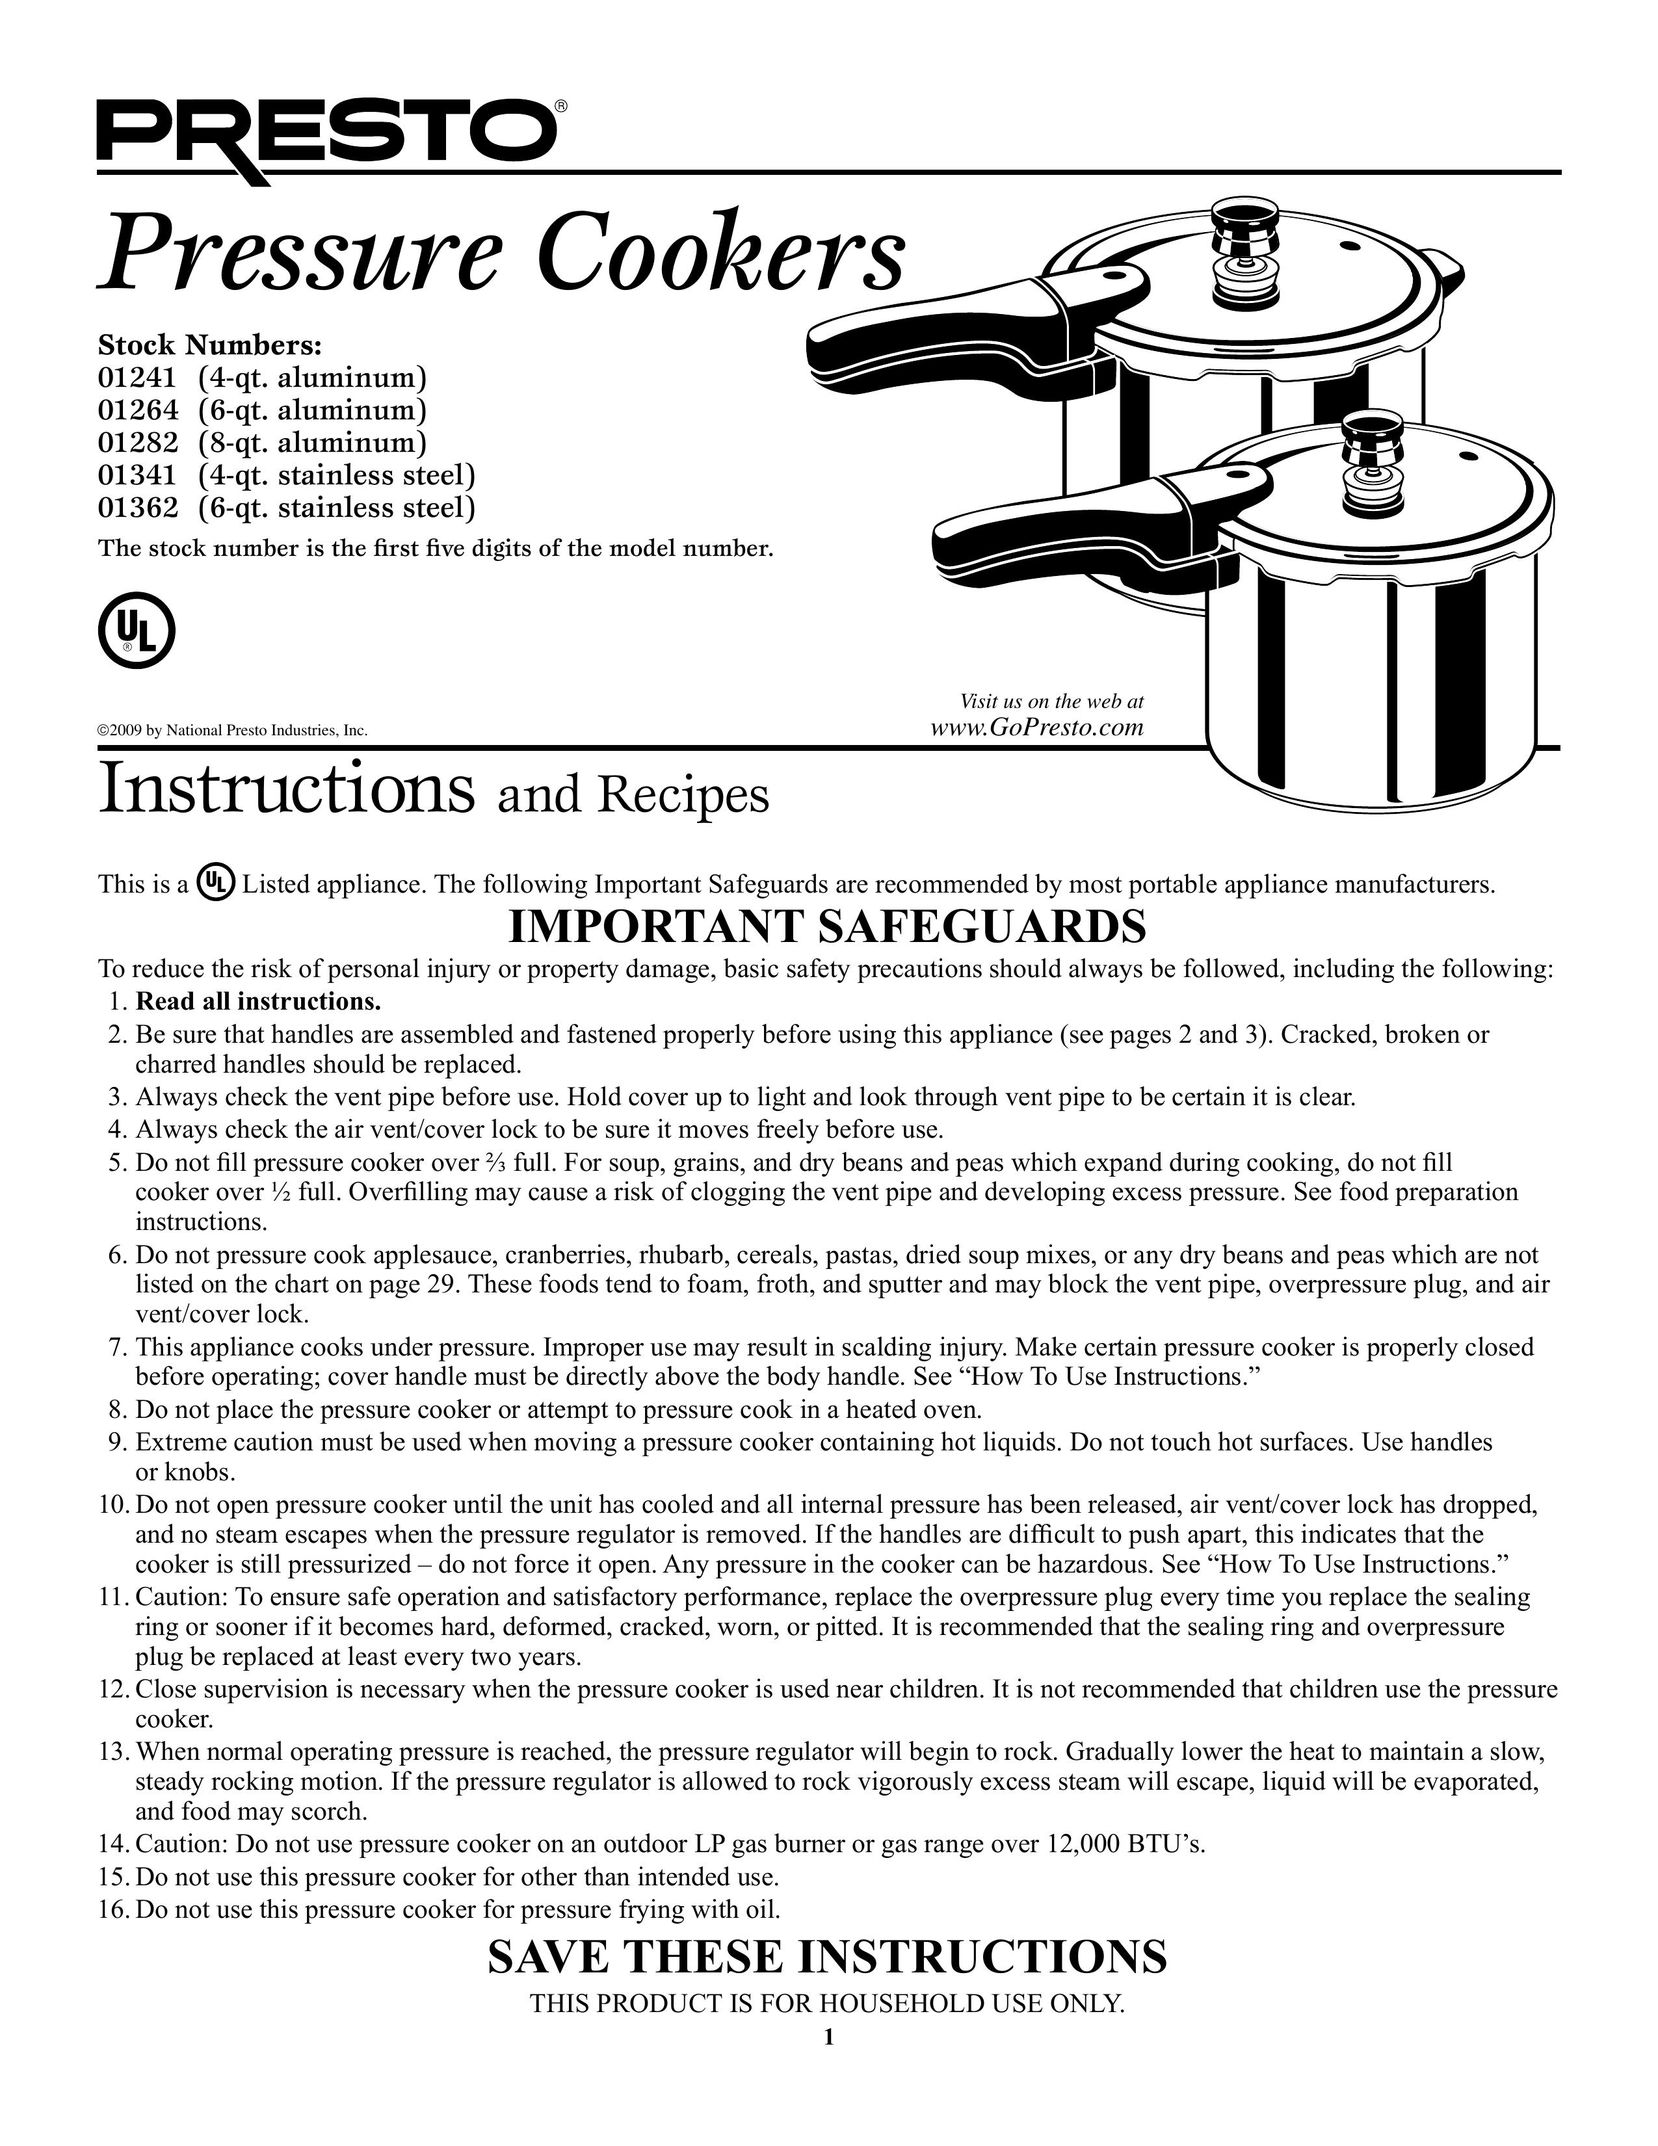 Presto 1282 Electric Pressure Cooker User Manual